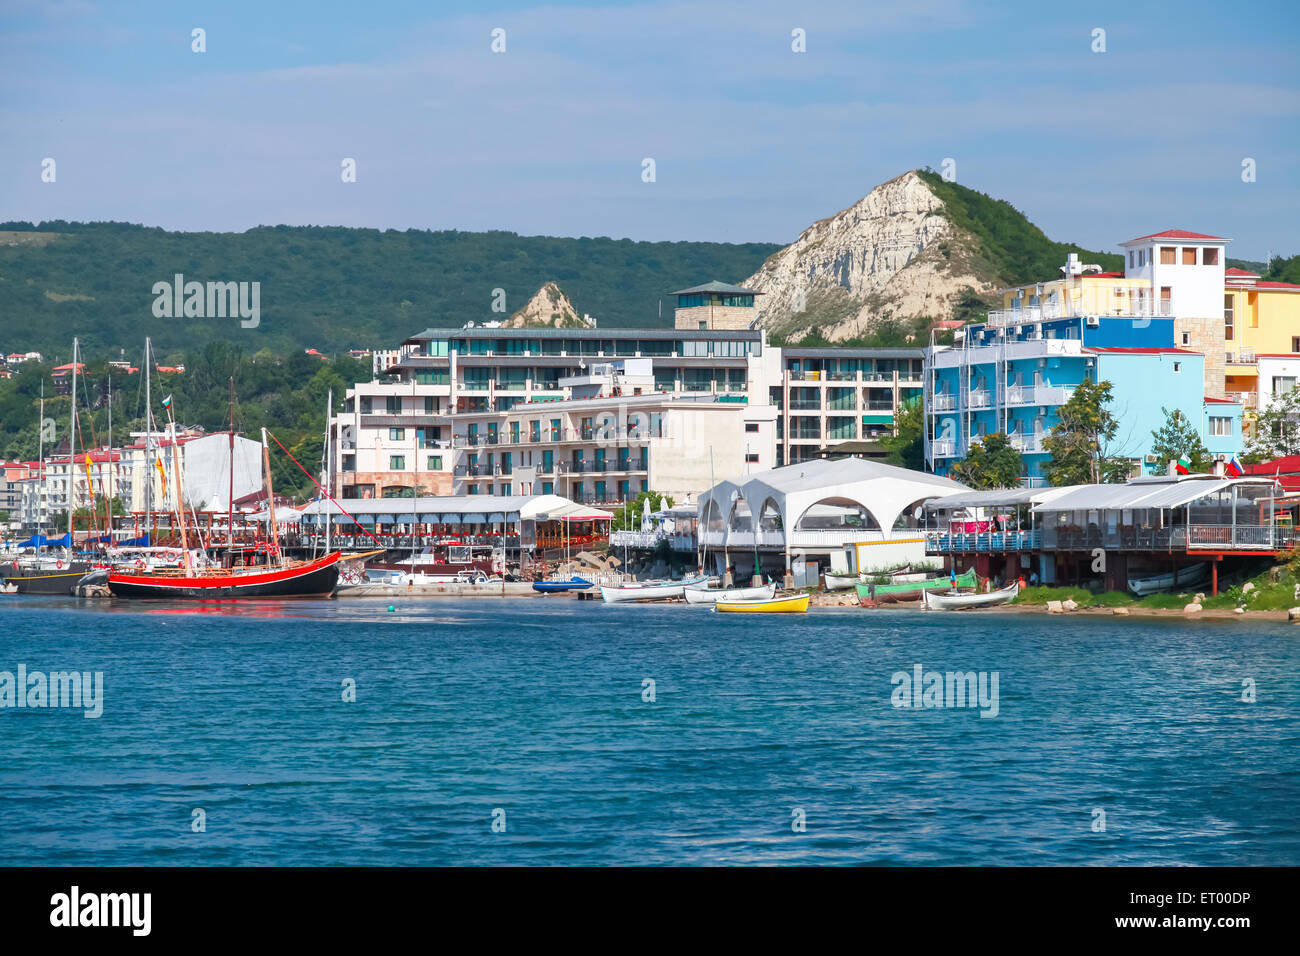 Paysage urbain d'été de Balchik resort town, côte de Mer Noire, région de Varna, Bulgarie Banque D'Images